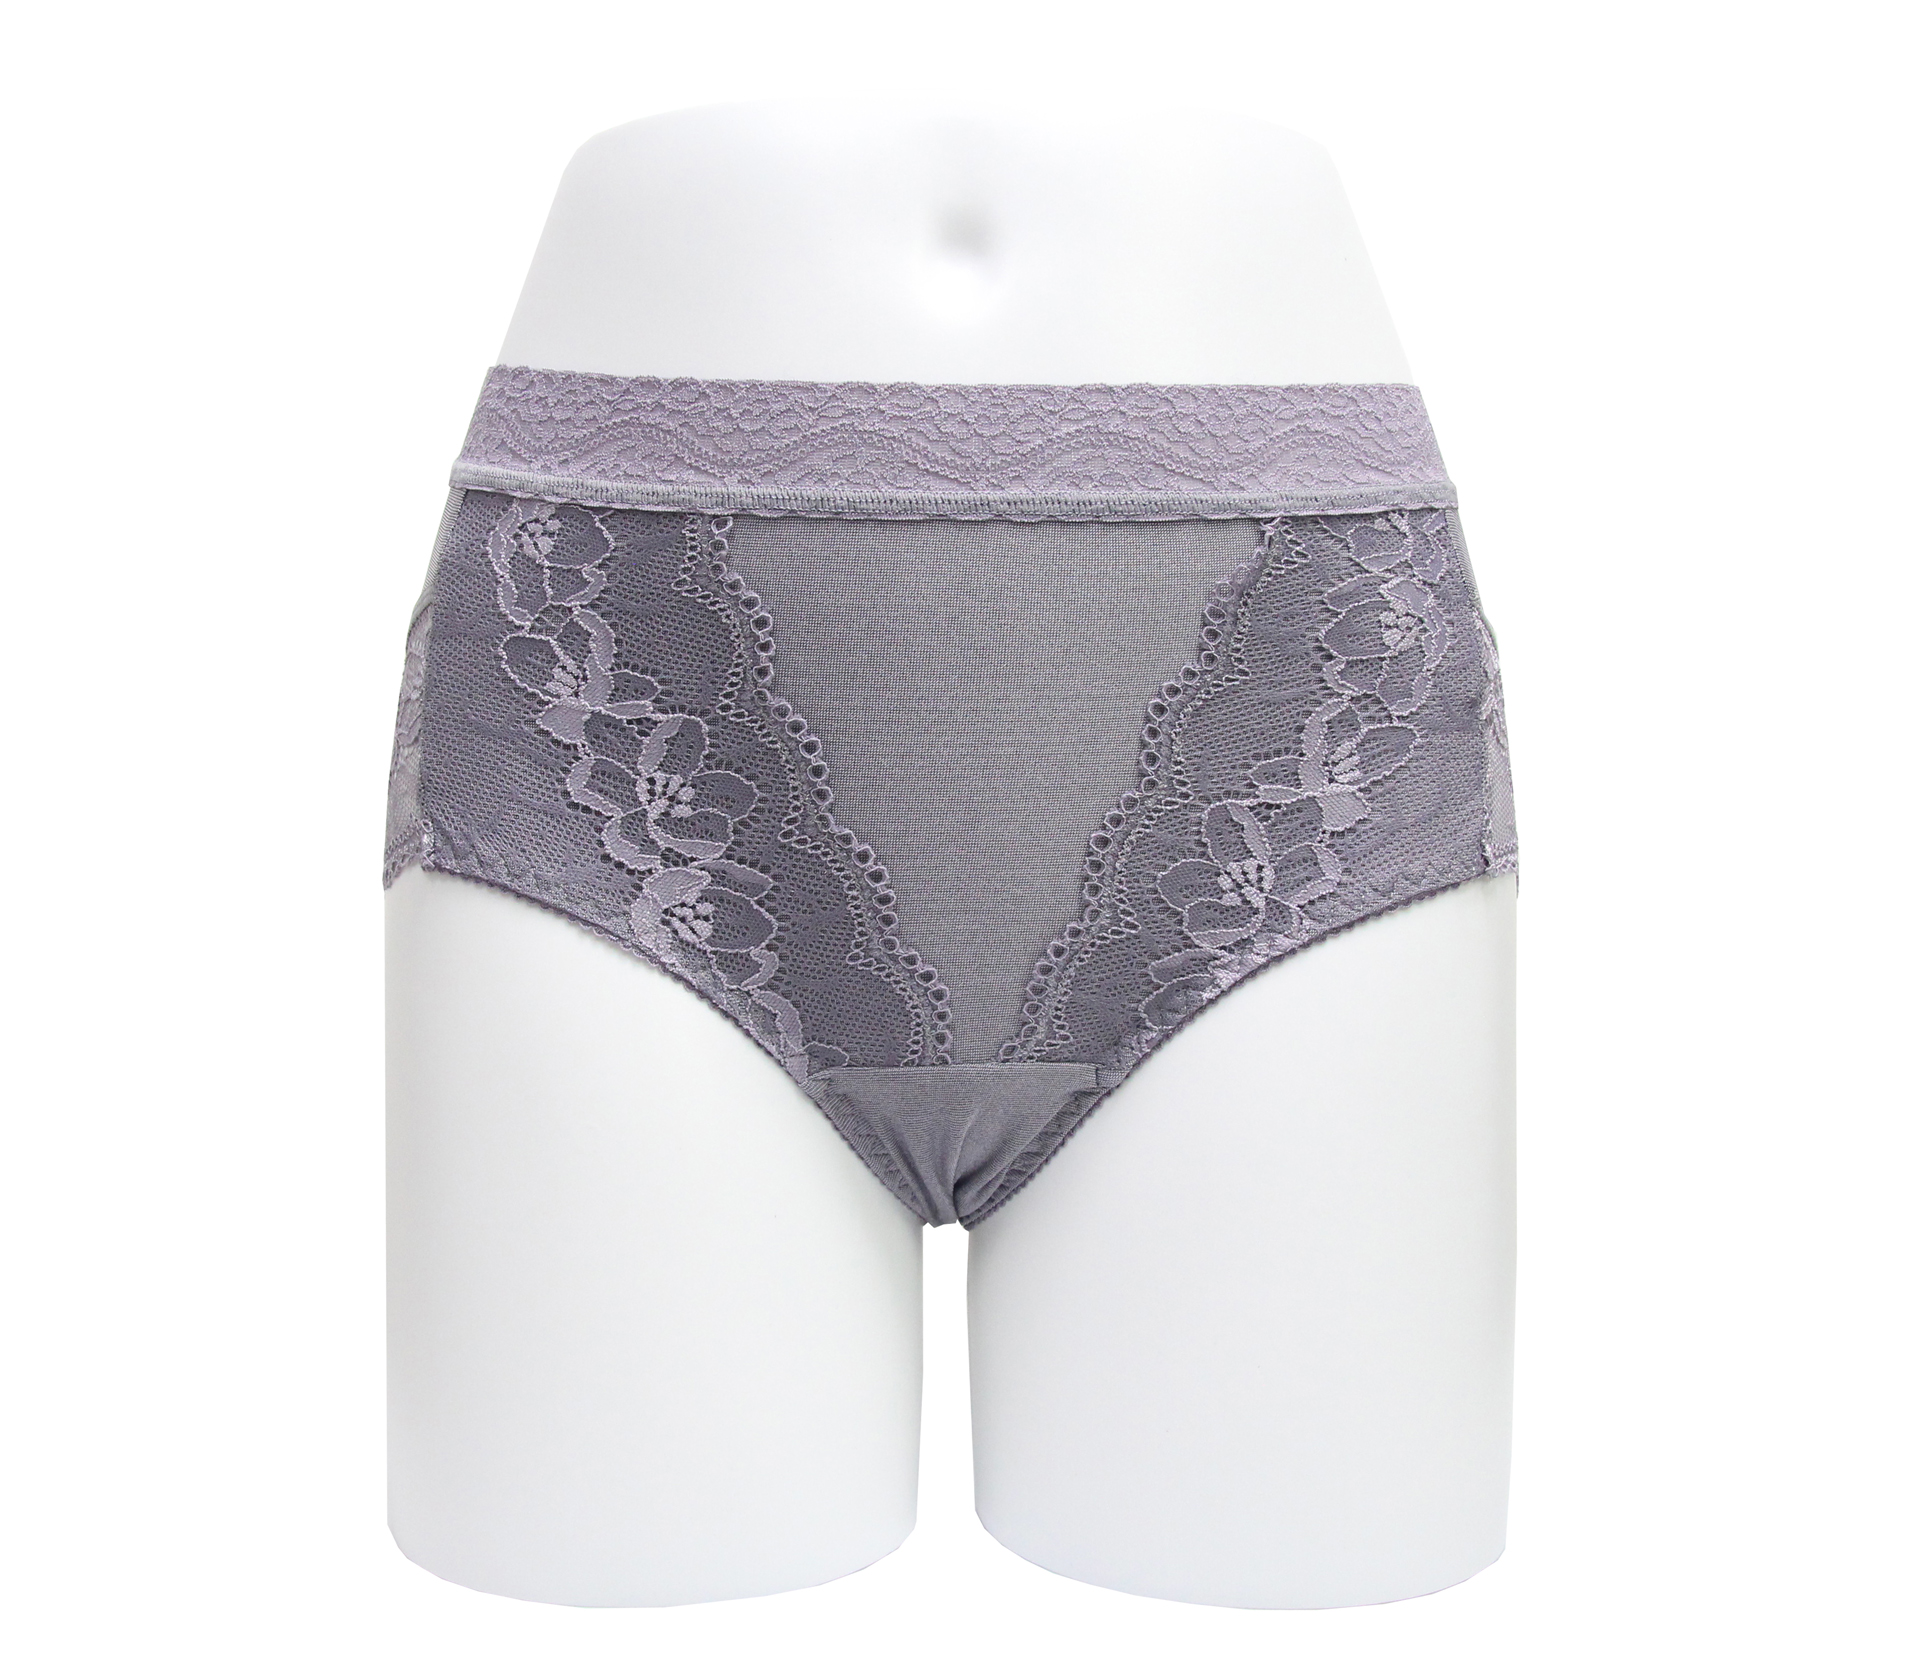 闕蘭絹華麗碘紗內褲- M8801 (紫色)